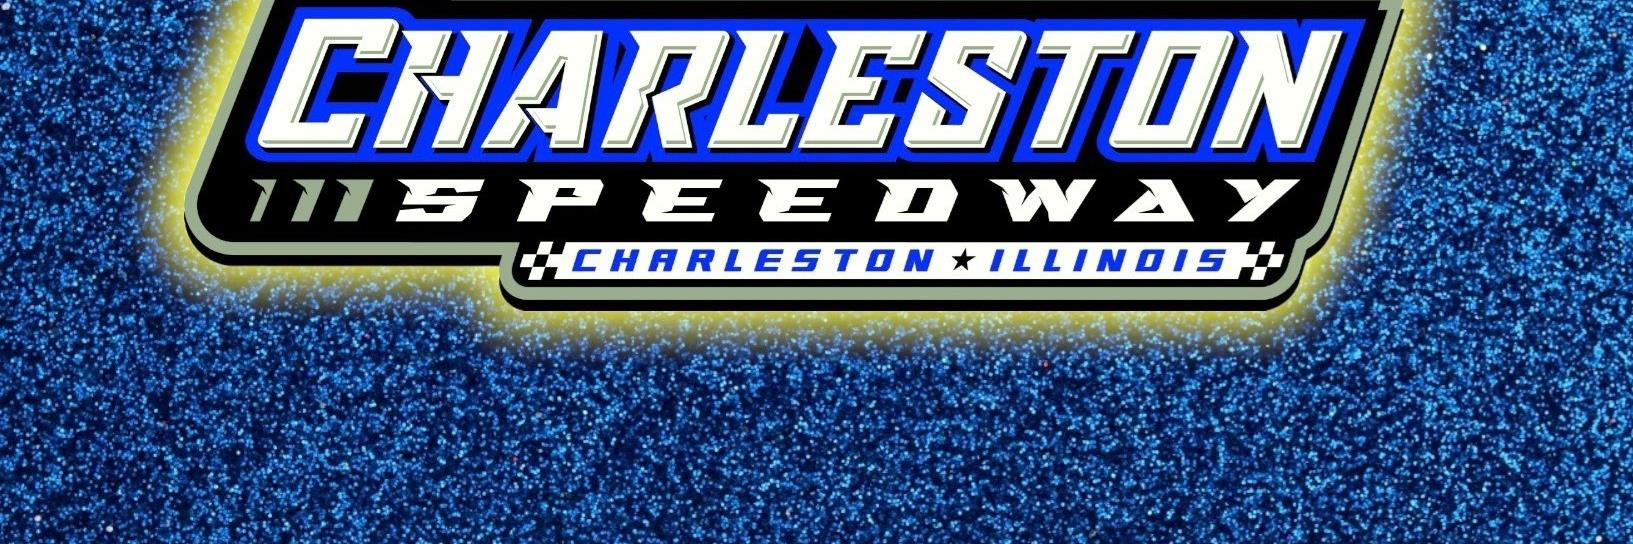 5/22/2021 - Charleston Speedway